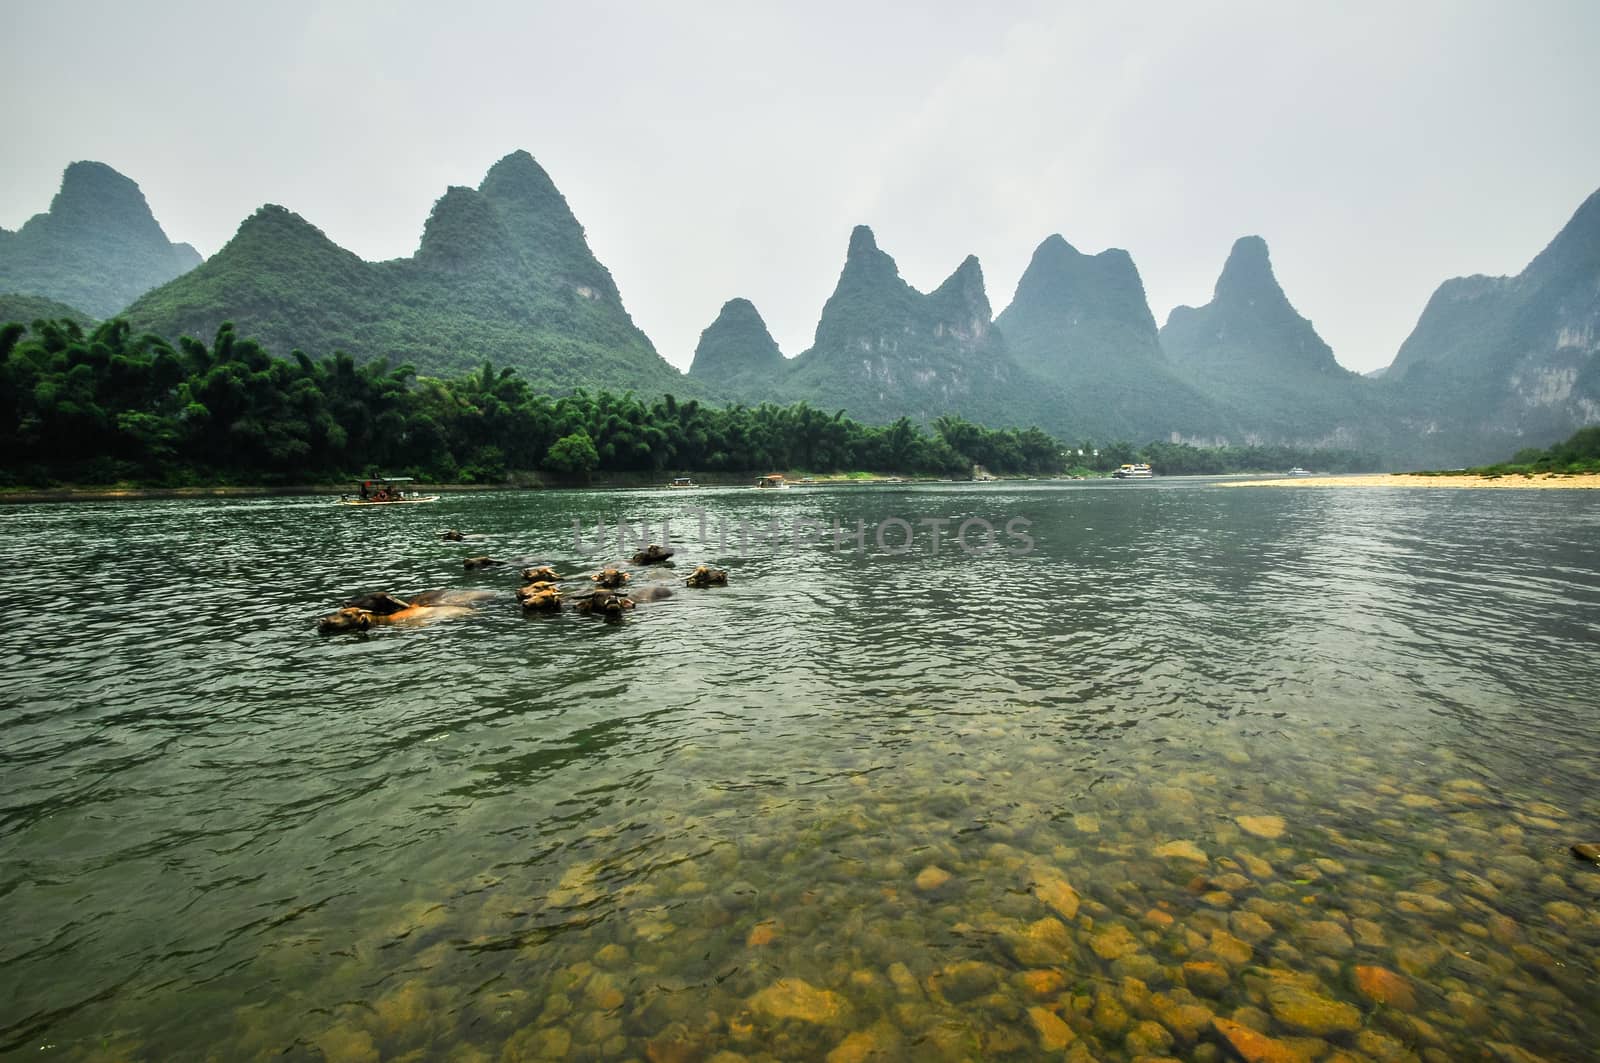 Guilin Li river Karst mountain landscape in Yangshuo by weltreisendertj